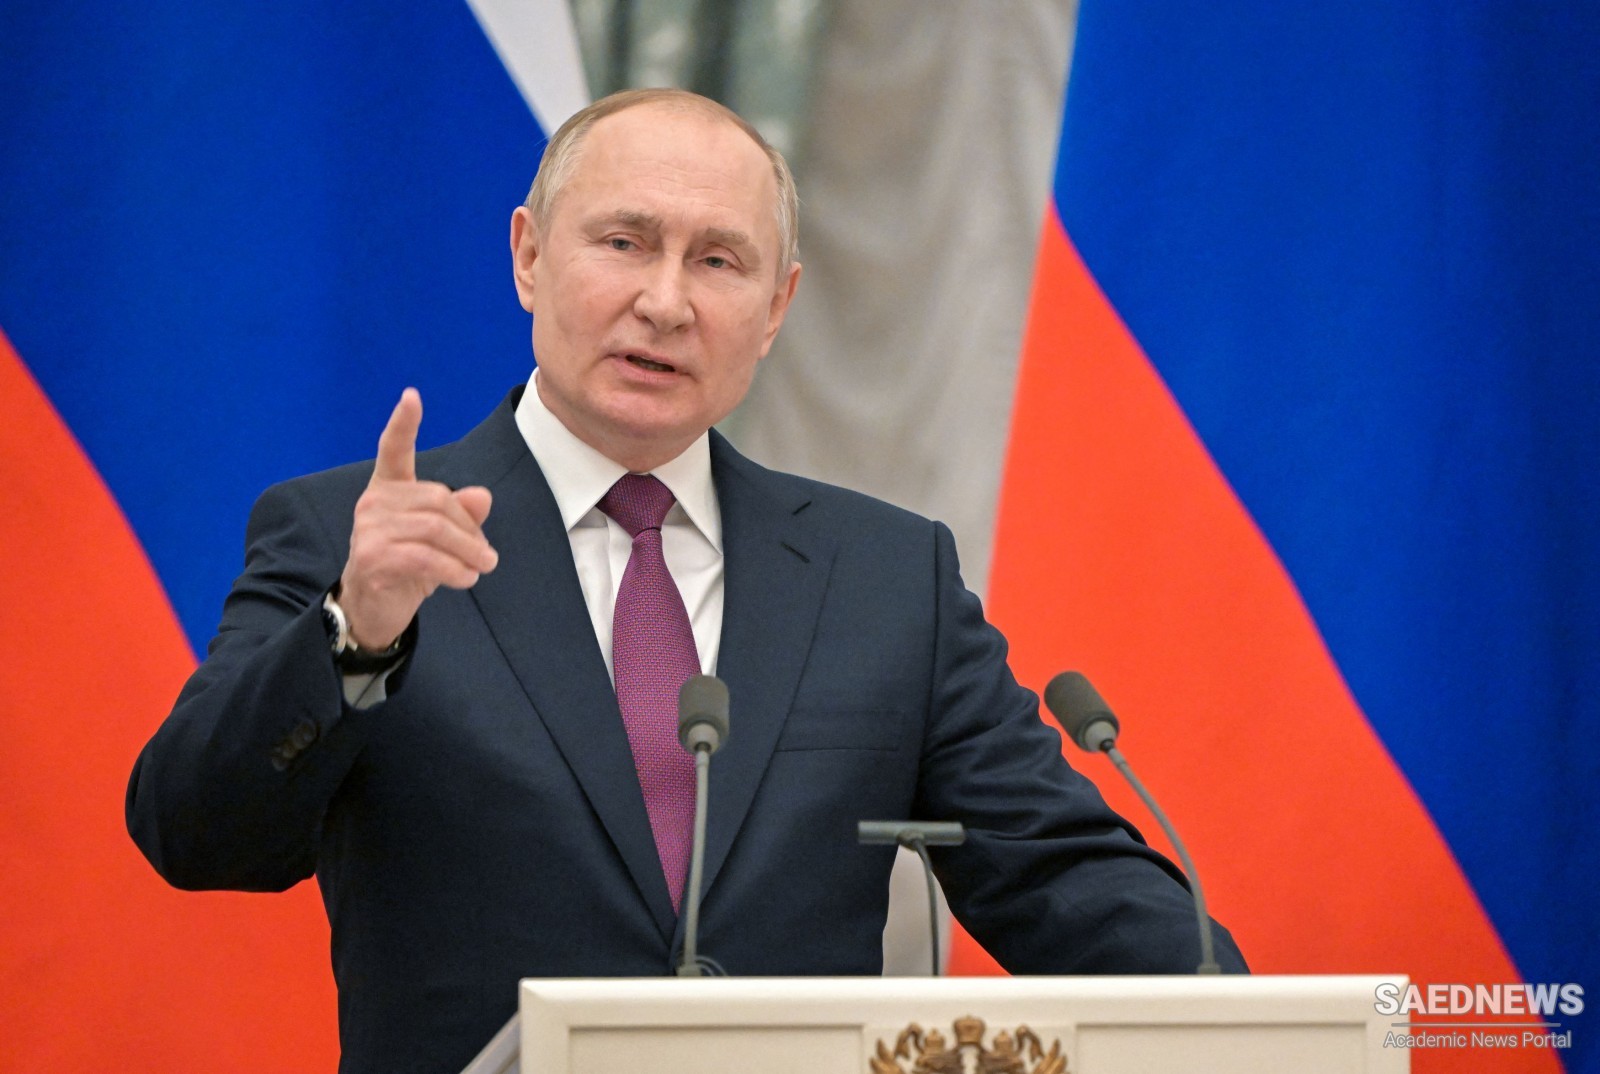 Putin Recognizes the Separatist Donbass Region Republics